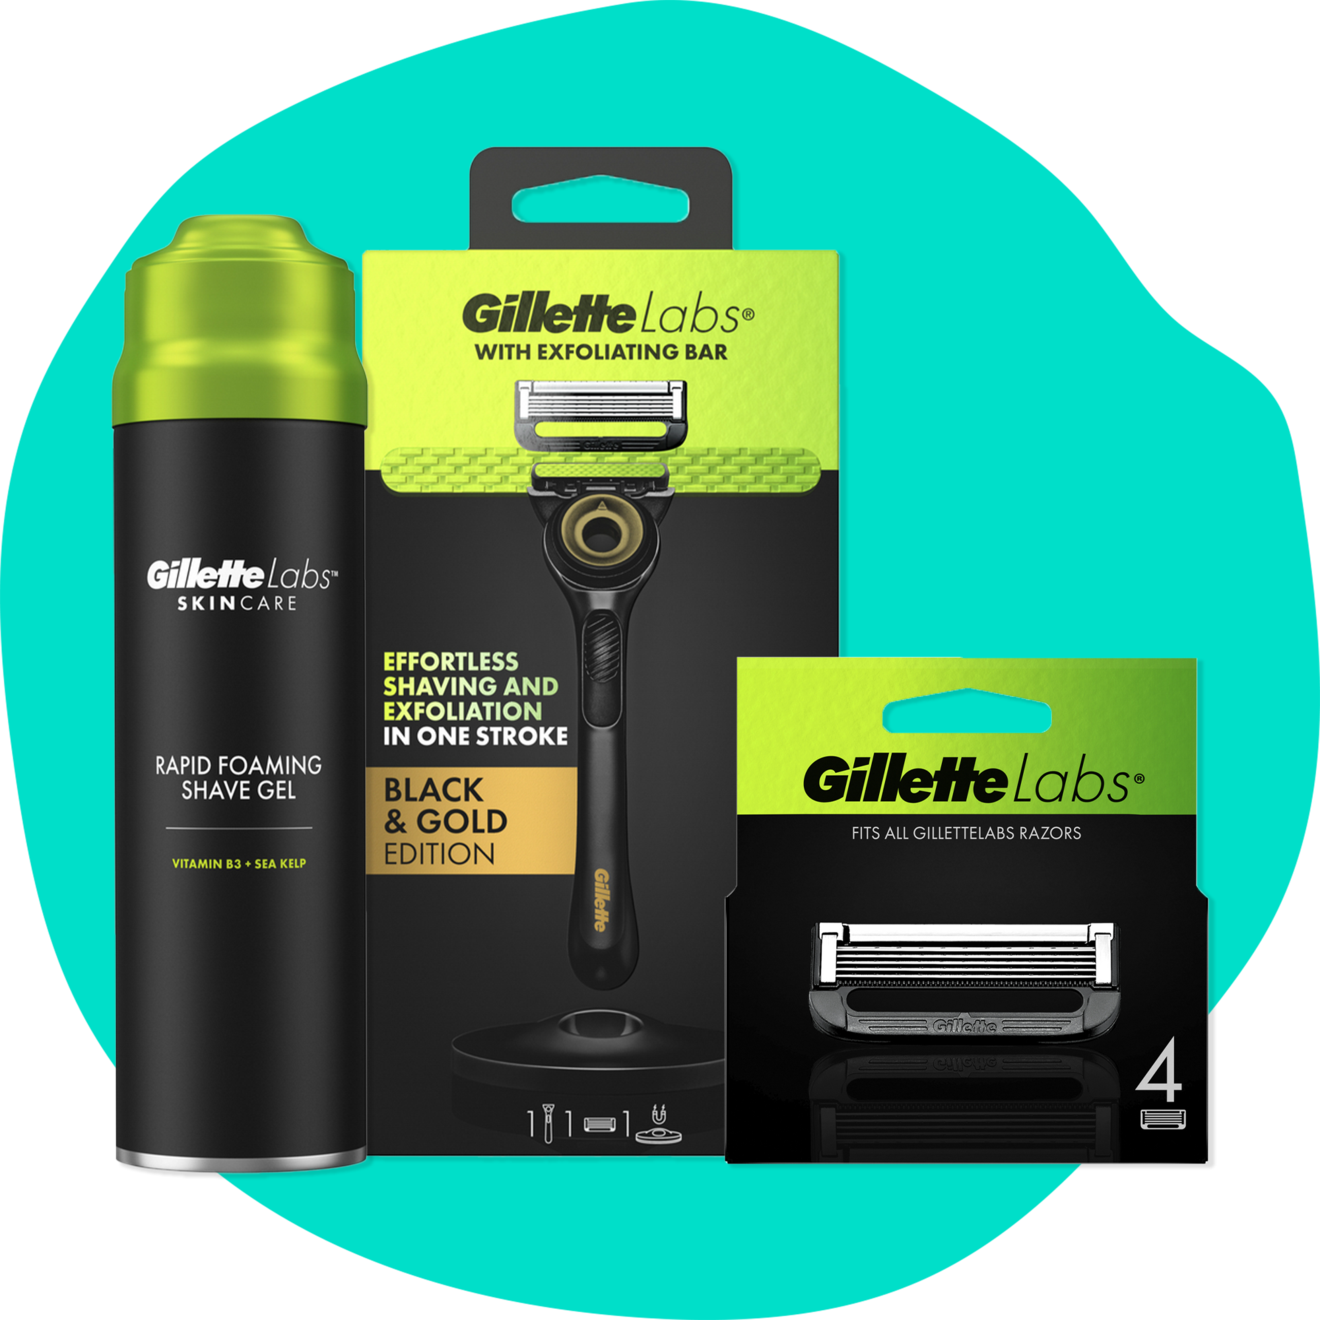 Gillette Labs-kassen på tilbud til 248 kr. hos Normal